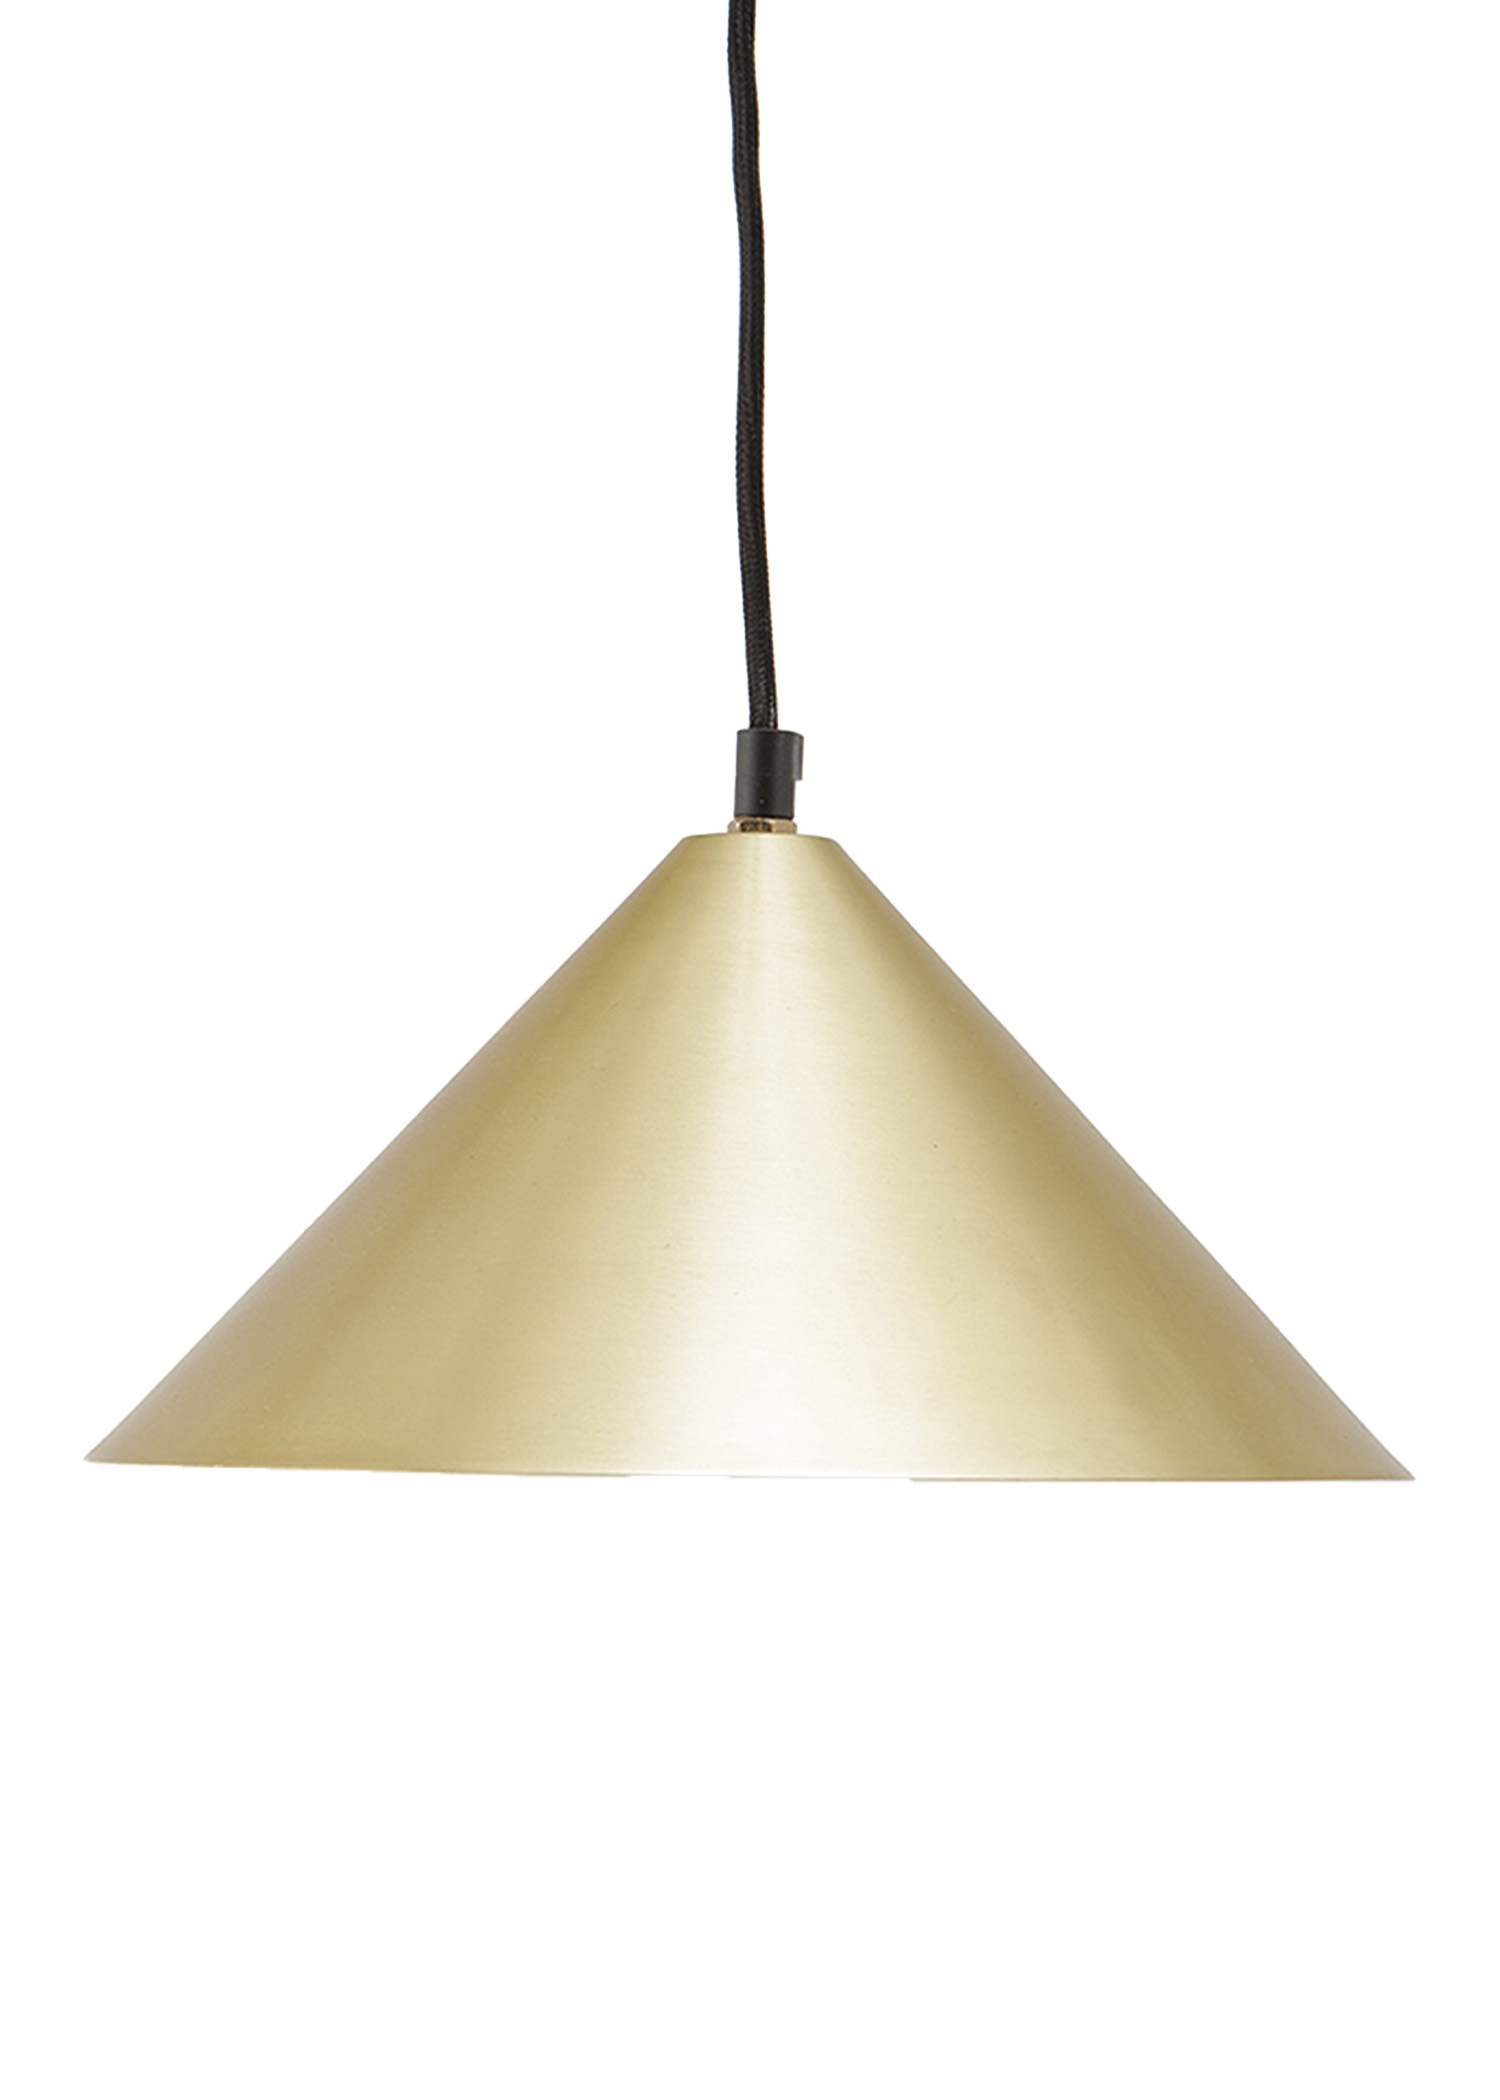 Brass ceiling light